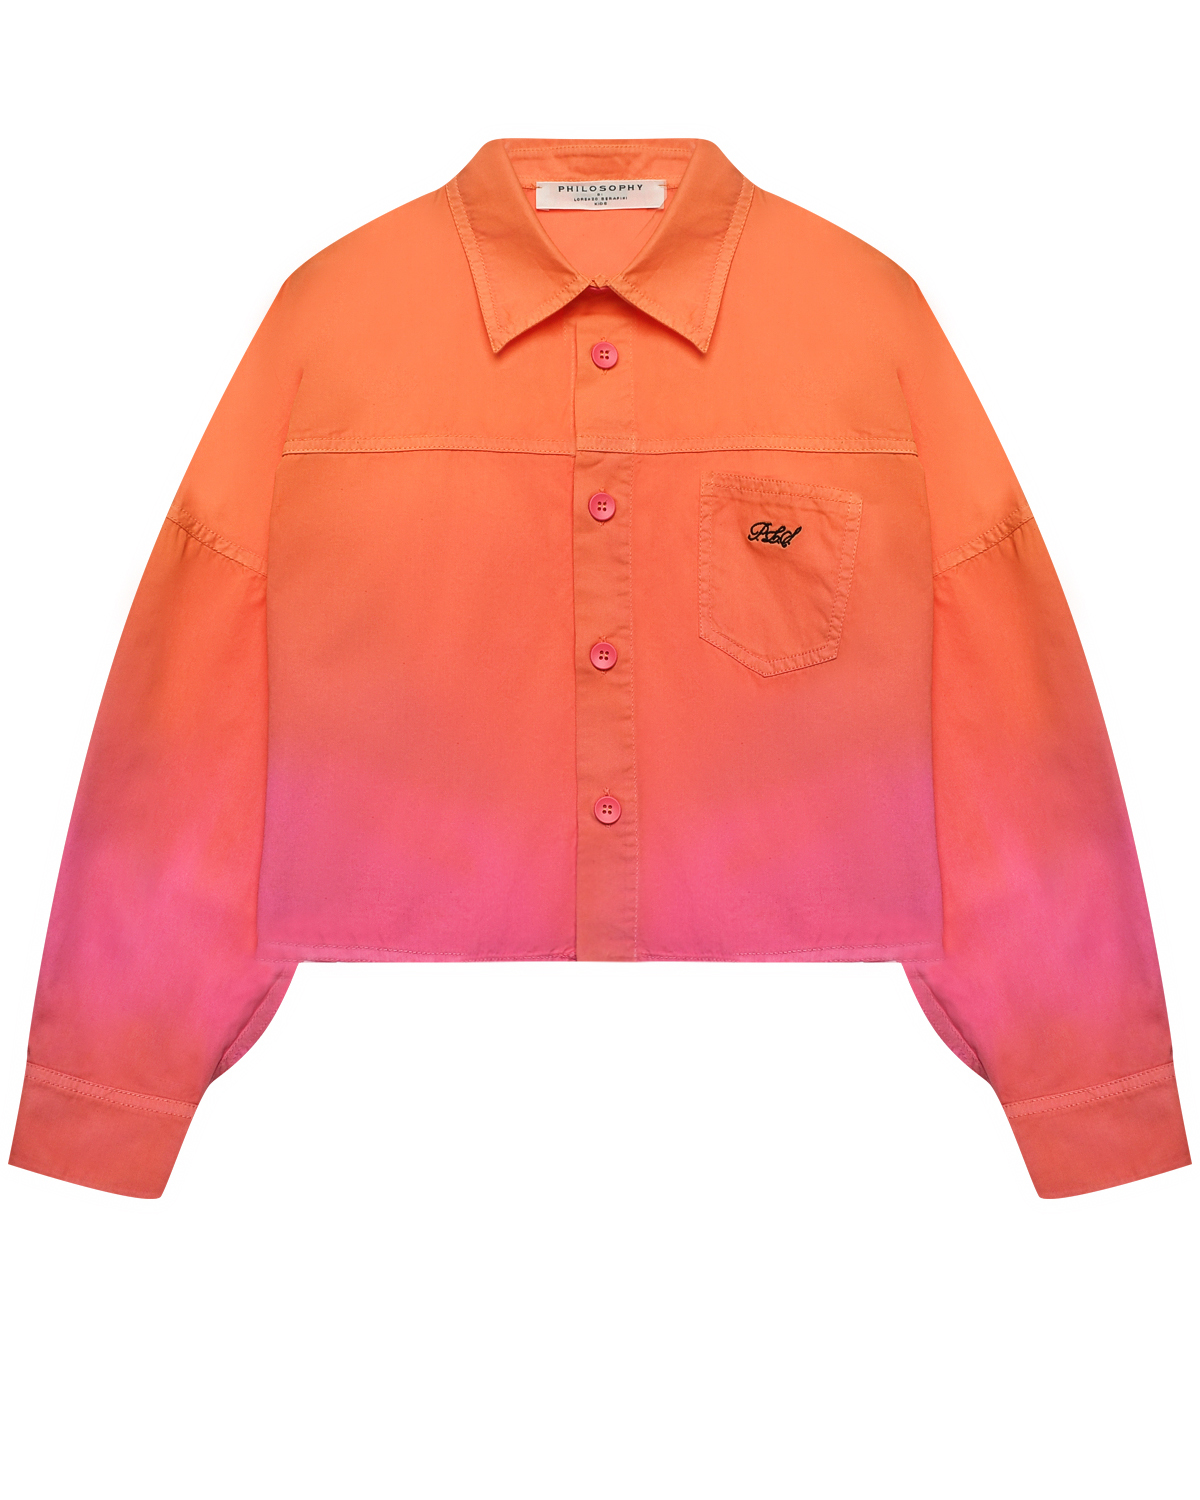 Джинсовая куртка с градиентным принтом Philosophy di Lorenzo Serafini Kids, размер 128, цвет мультиколор